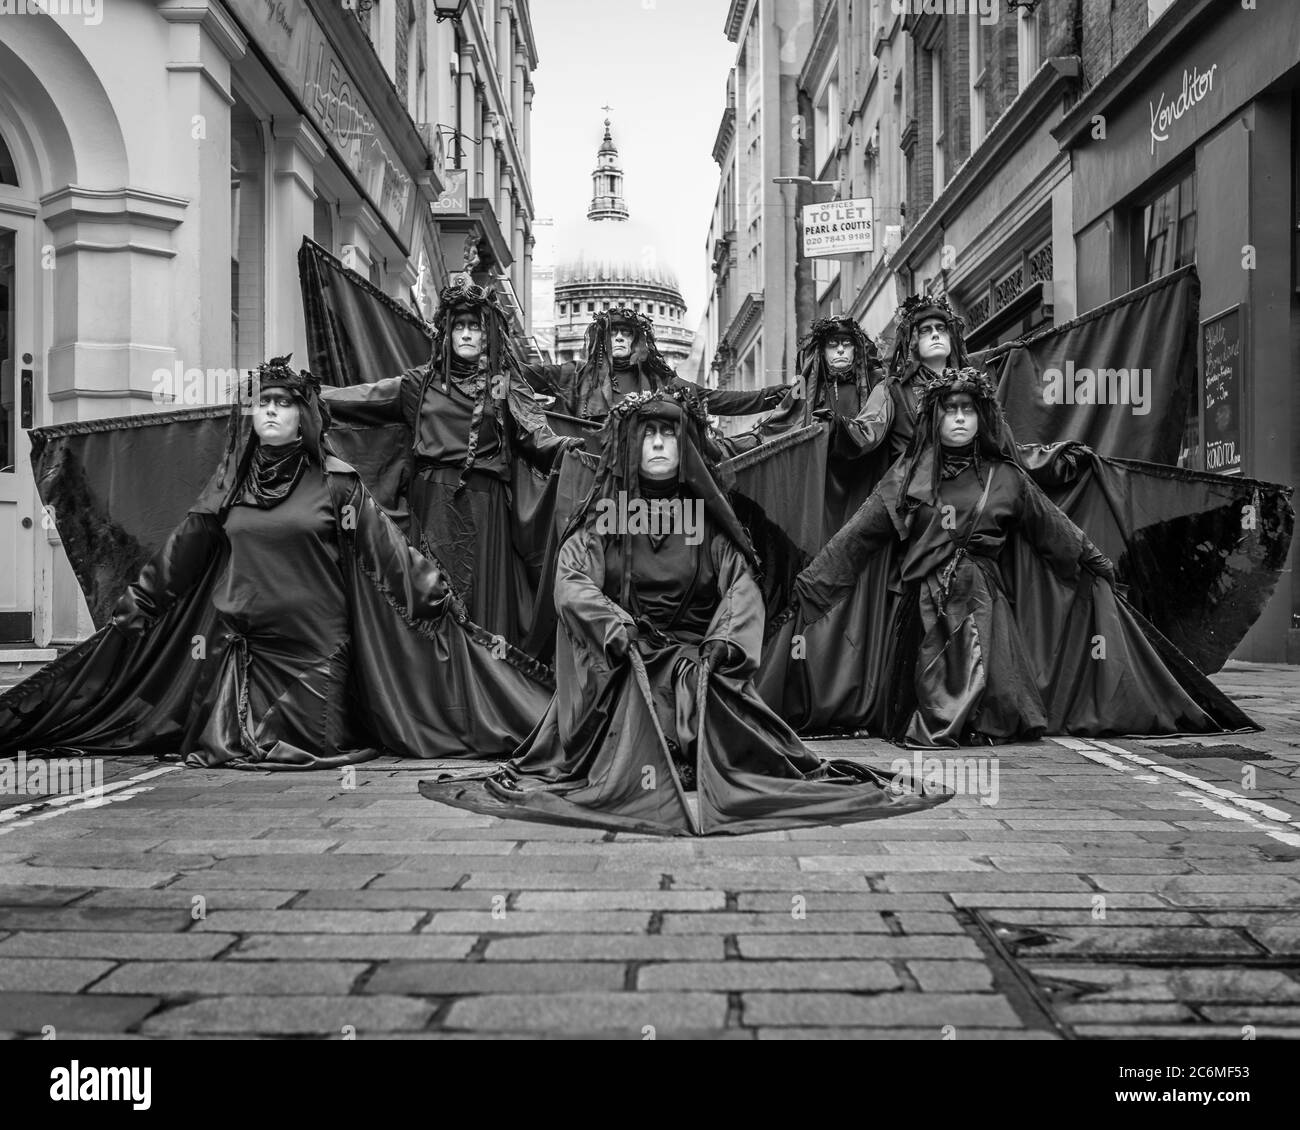 Extinction la Brigade noire de la rébellion proteste dans la City de Londres pour souligner le sauvetage des grandes entreprises. Banque D'Images